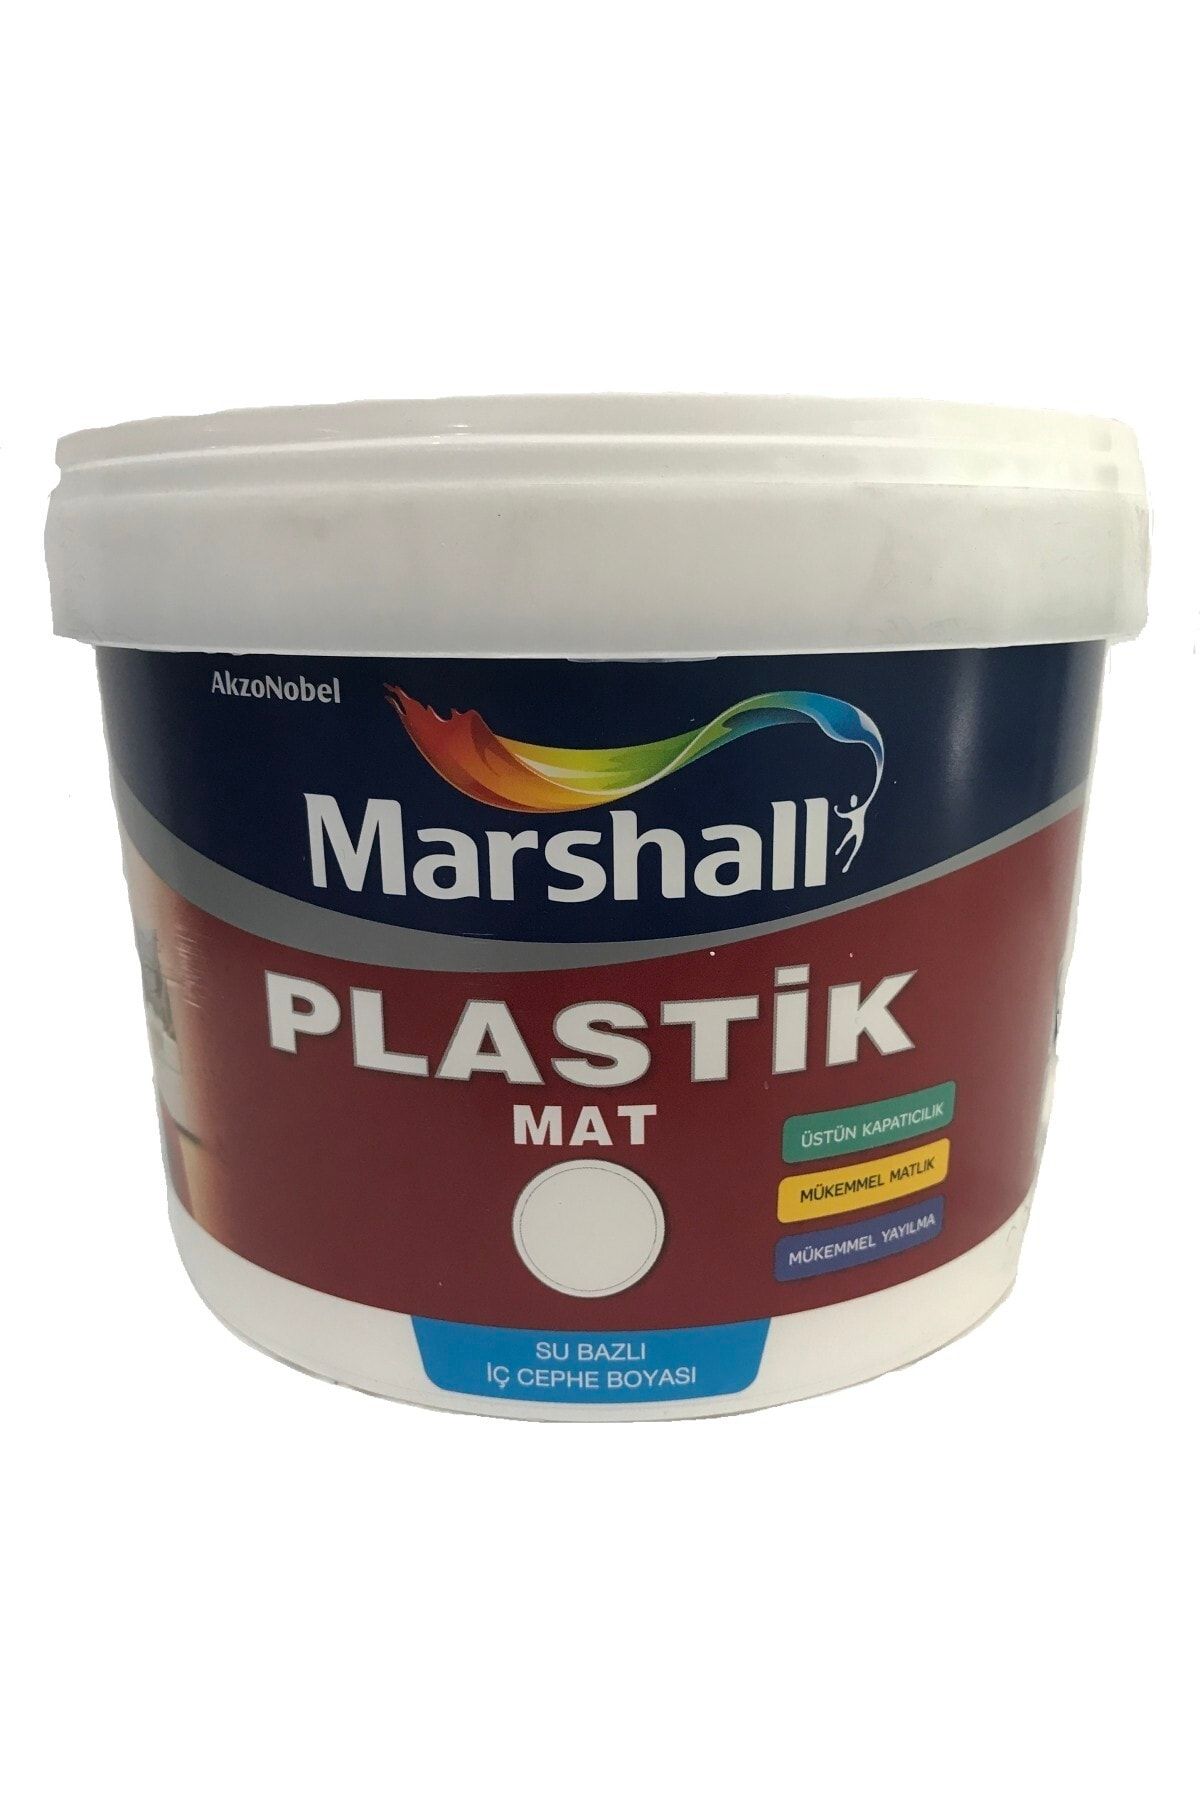 Marshall Plastik Mat Su Bazlı Duvar Boyası 2.5 Lt/3,5 Kg - Silinebilir -kolay Uygulama - Çakıl Taşı